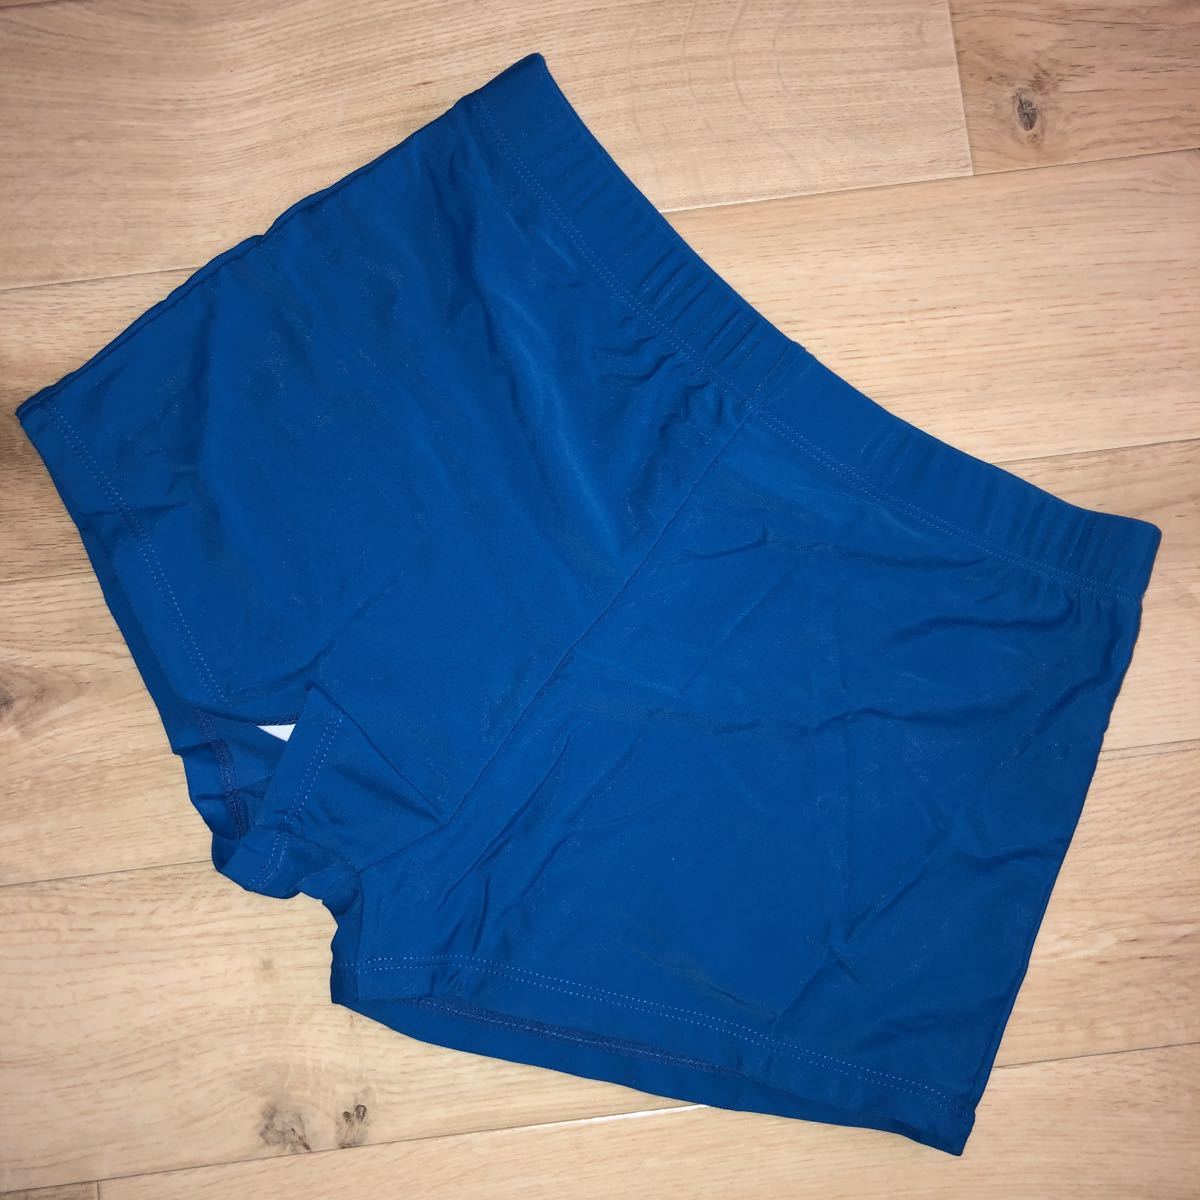 メンズ 海水パンツ ビキニ パンツ S 新品 ブルー 青 水着の画像1